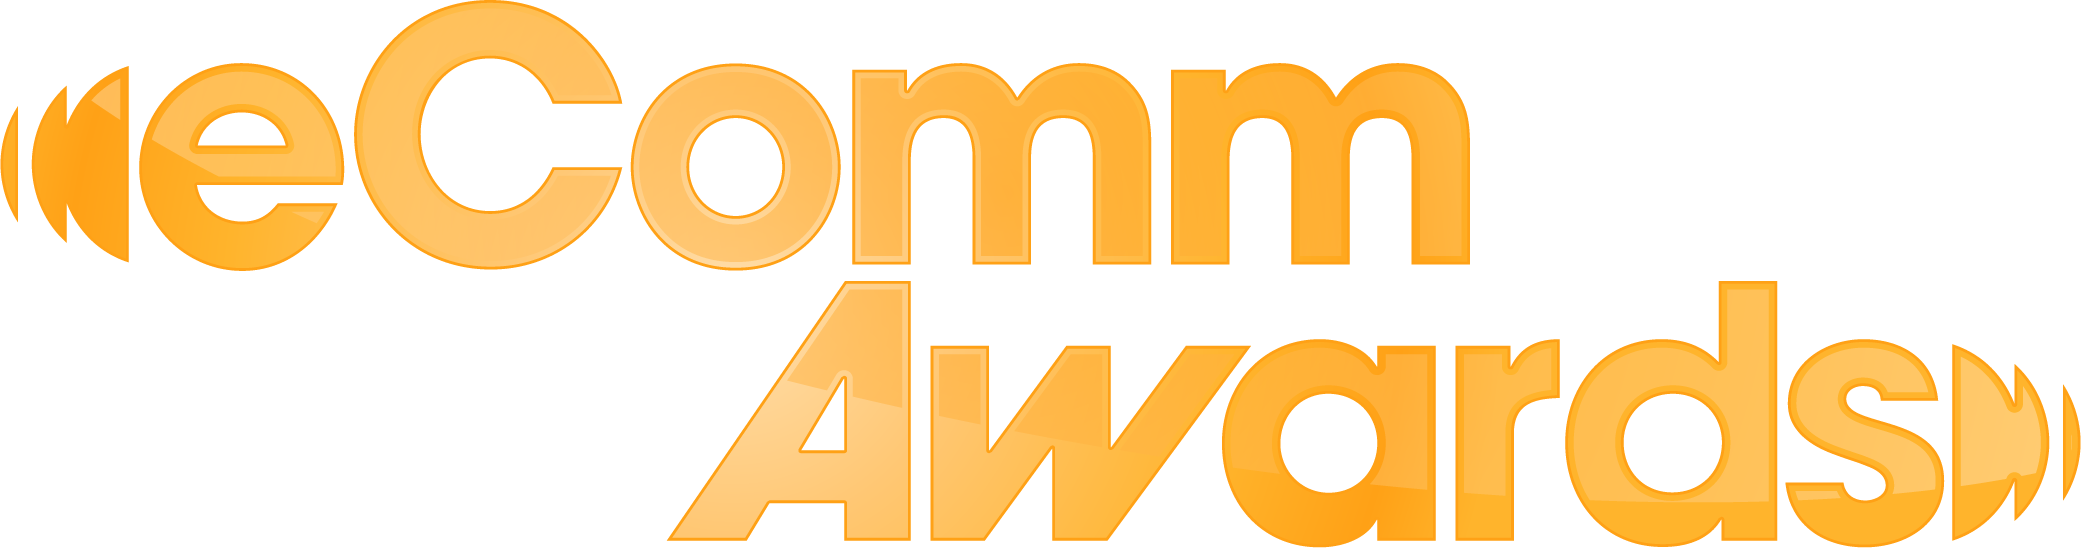 eComm Awards logo